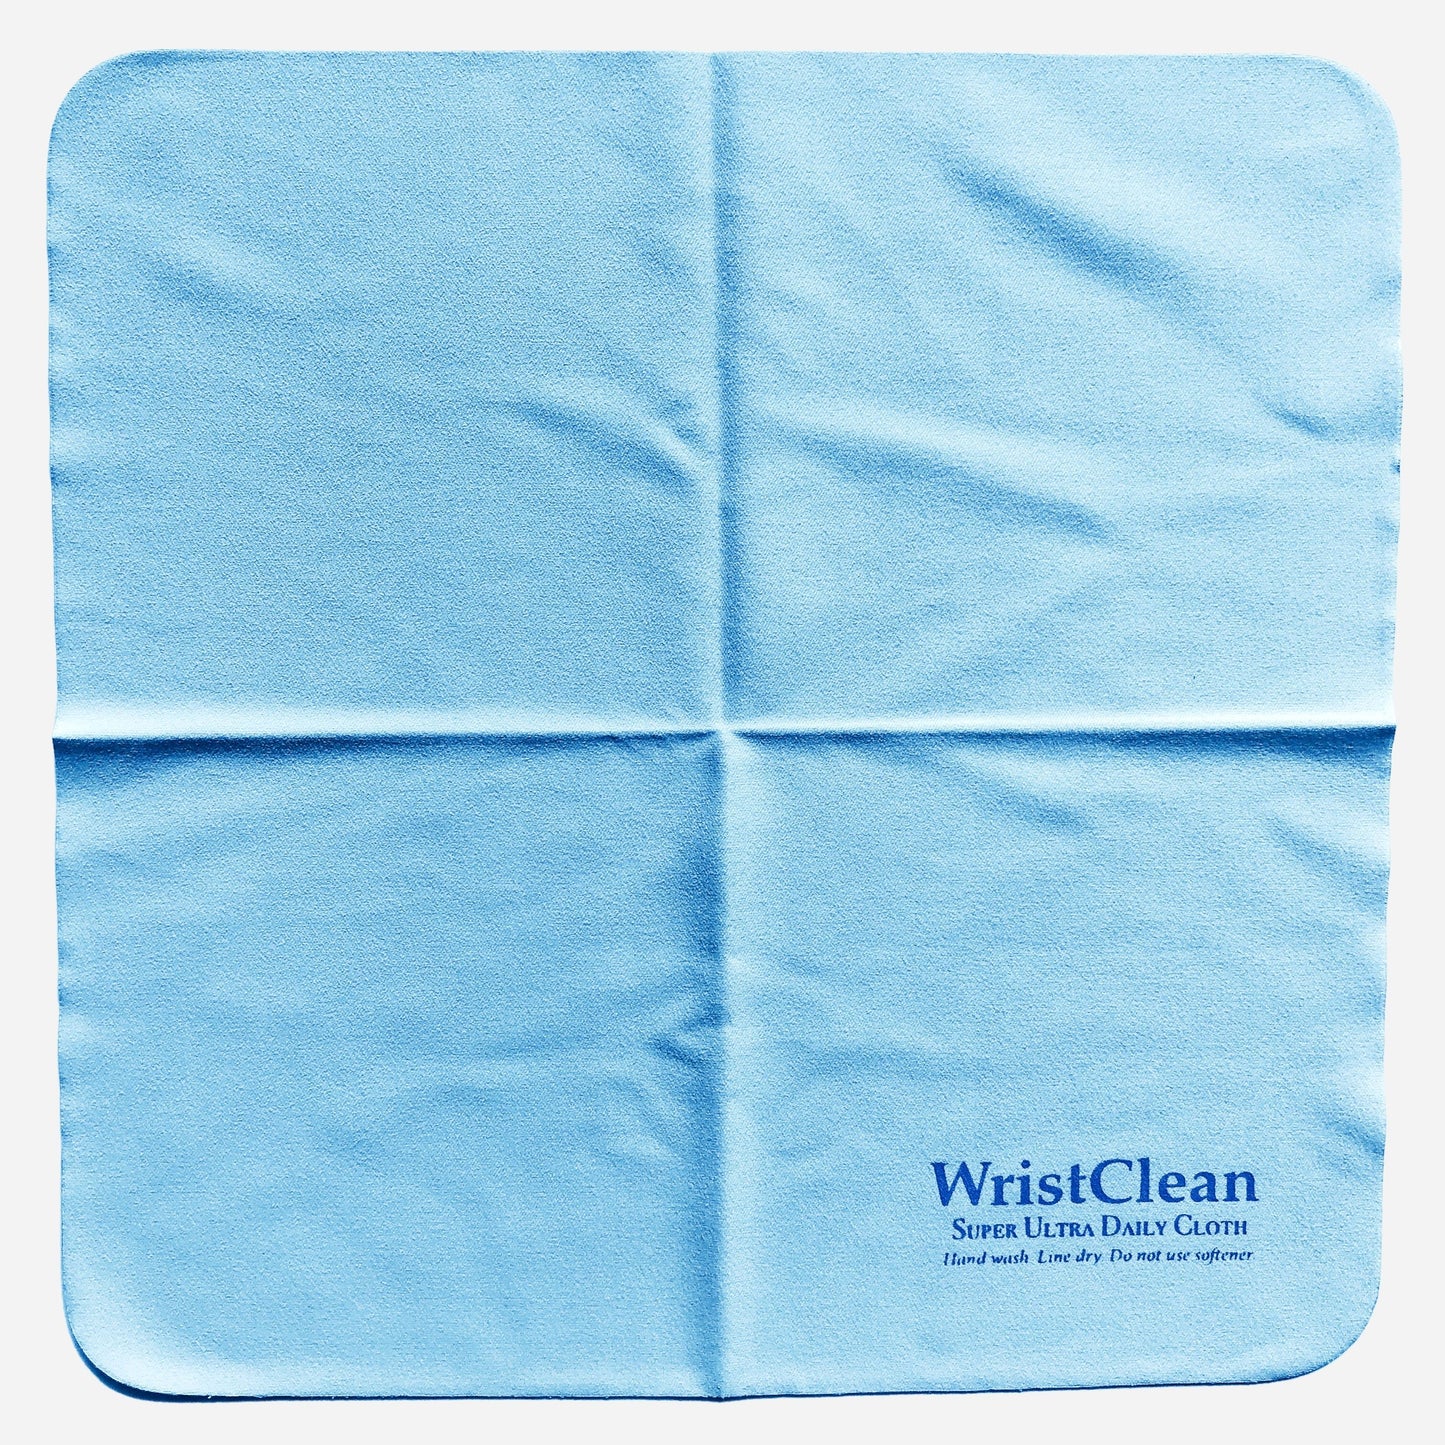 WristClean Daily Cloth